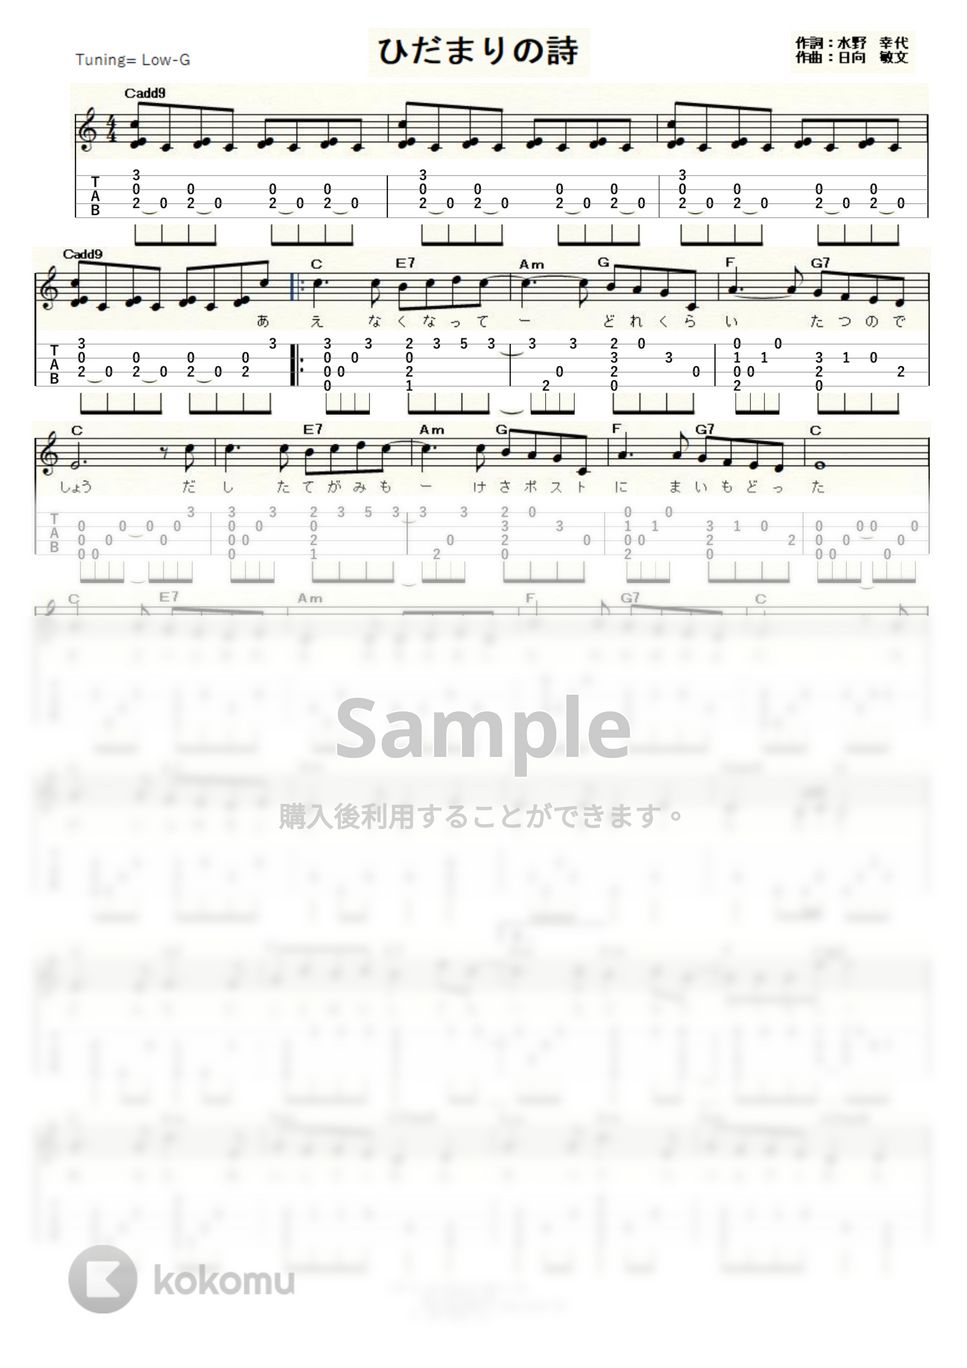 Le Couple - ひだまりの詩 (Low-G) by ukulelepapa